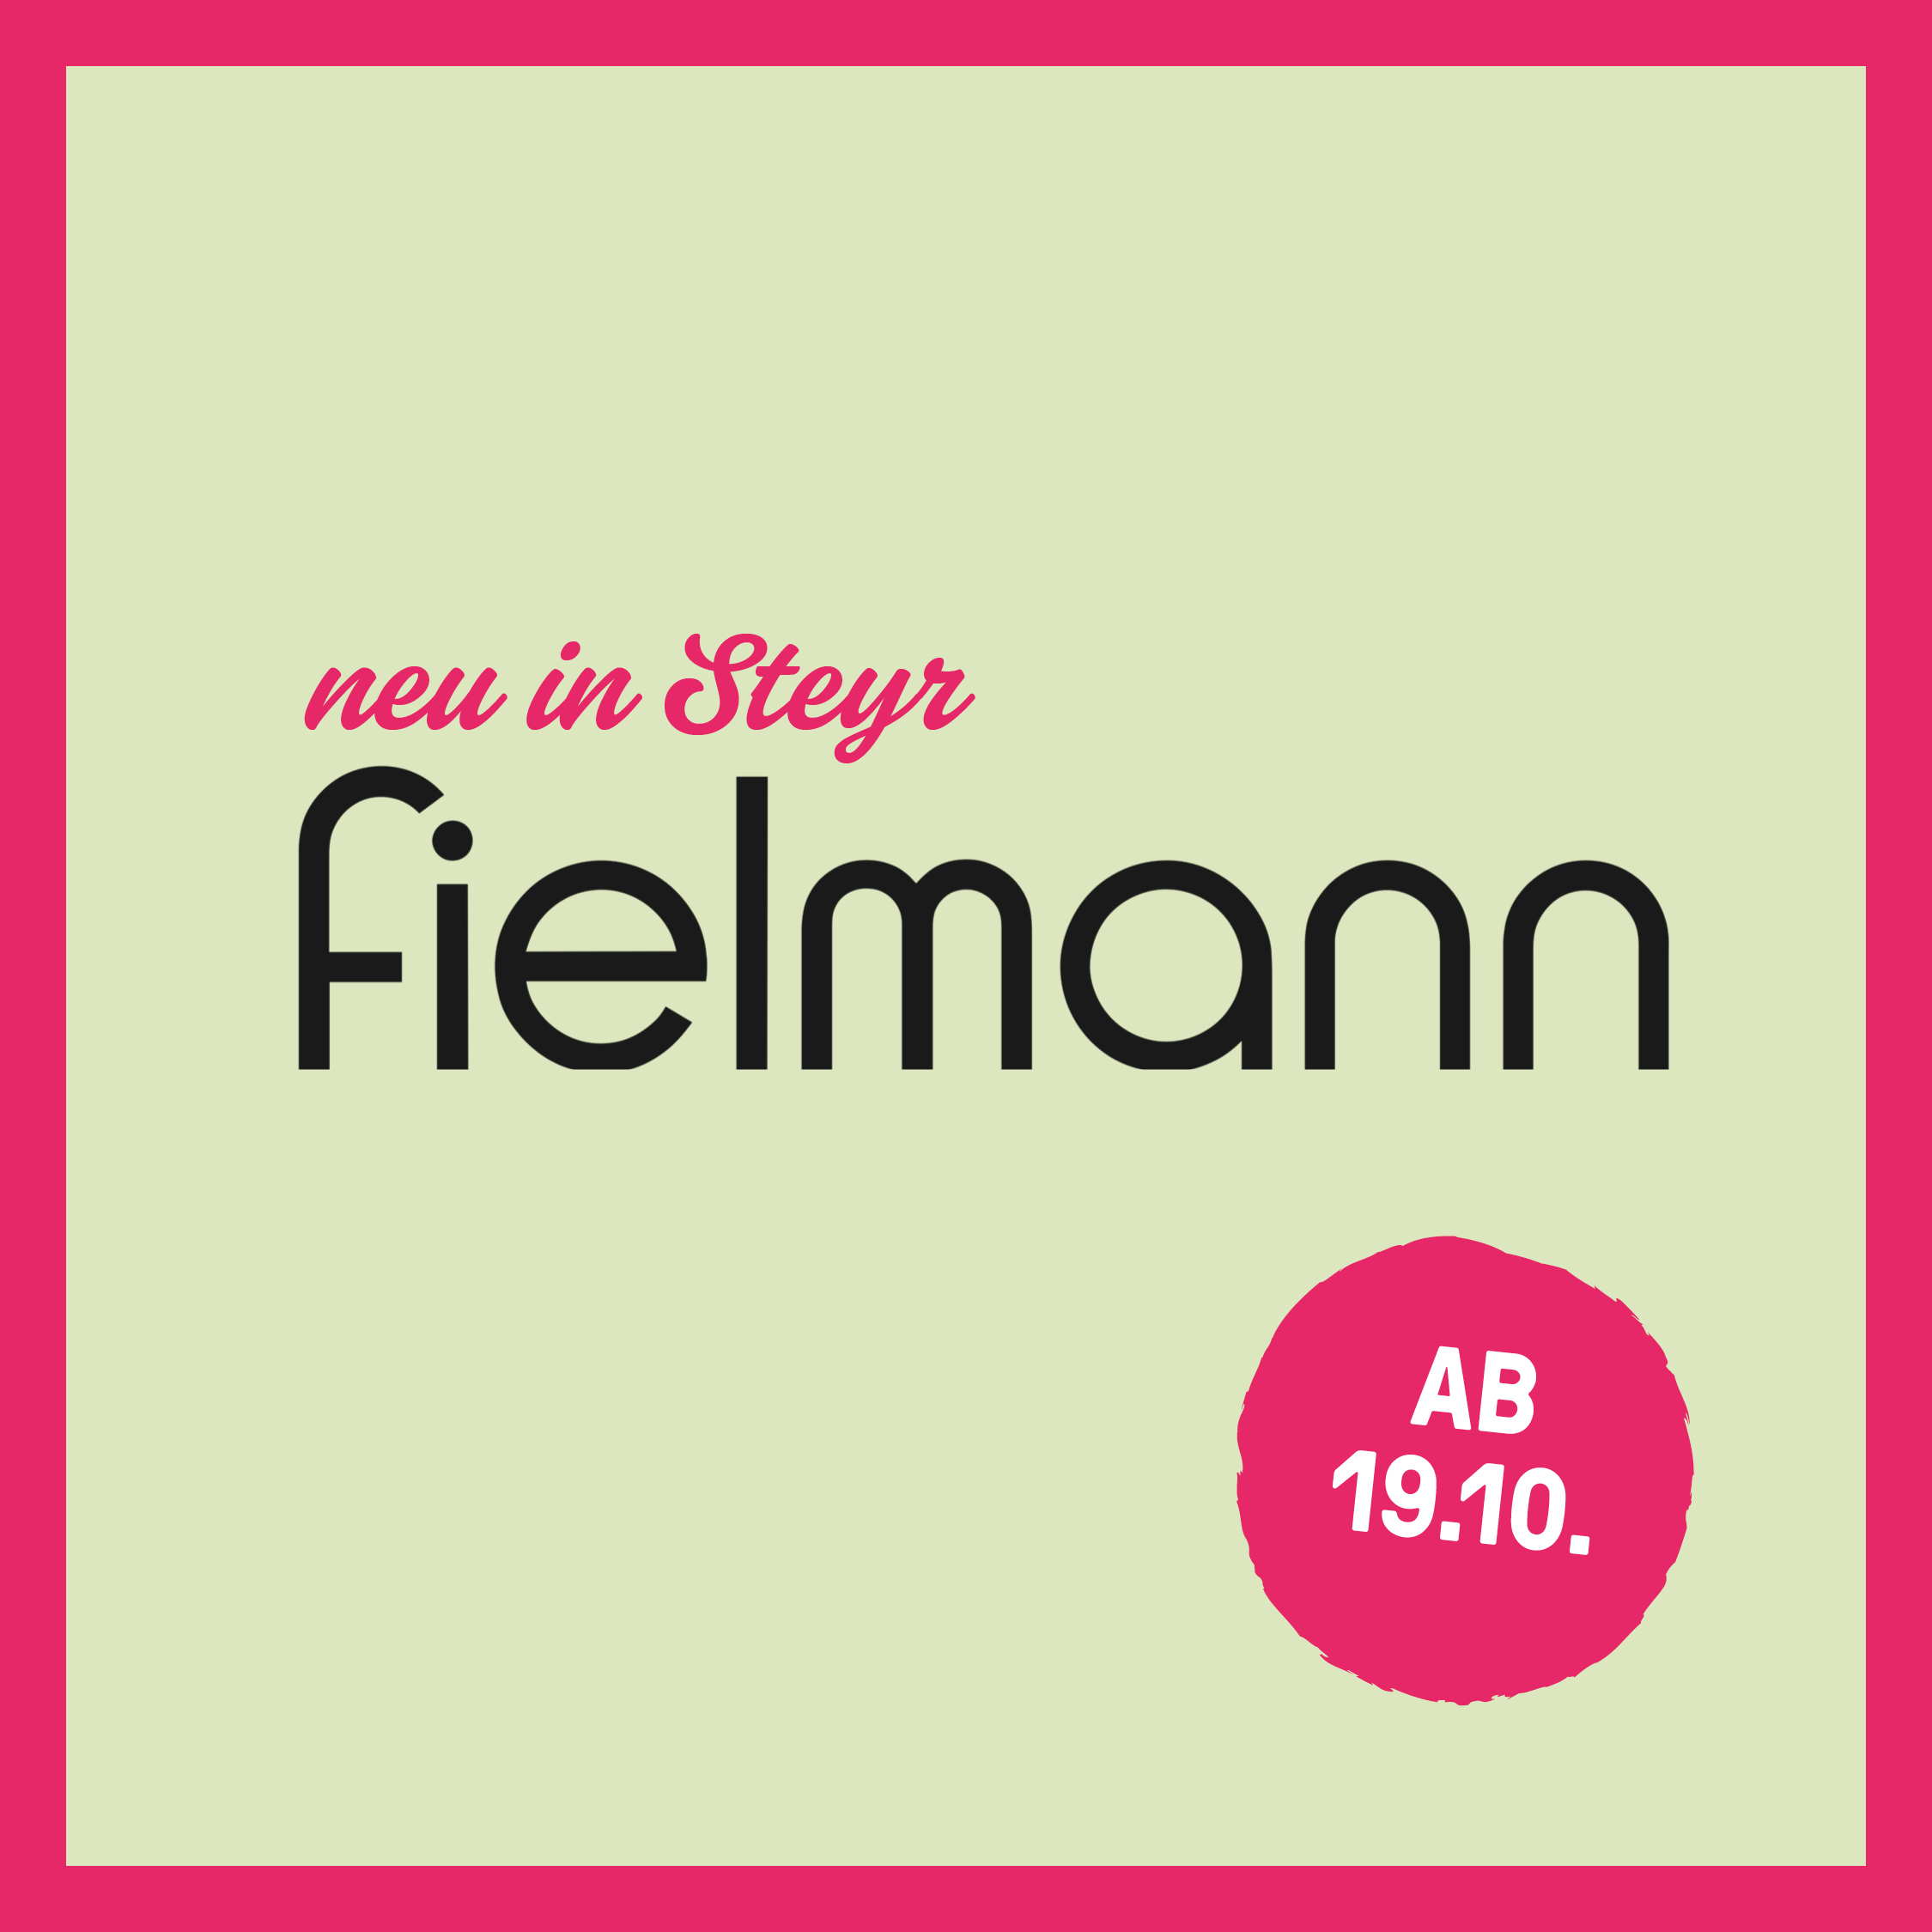 2310 HEY Fielmann SoMe 1080x1080px RZ